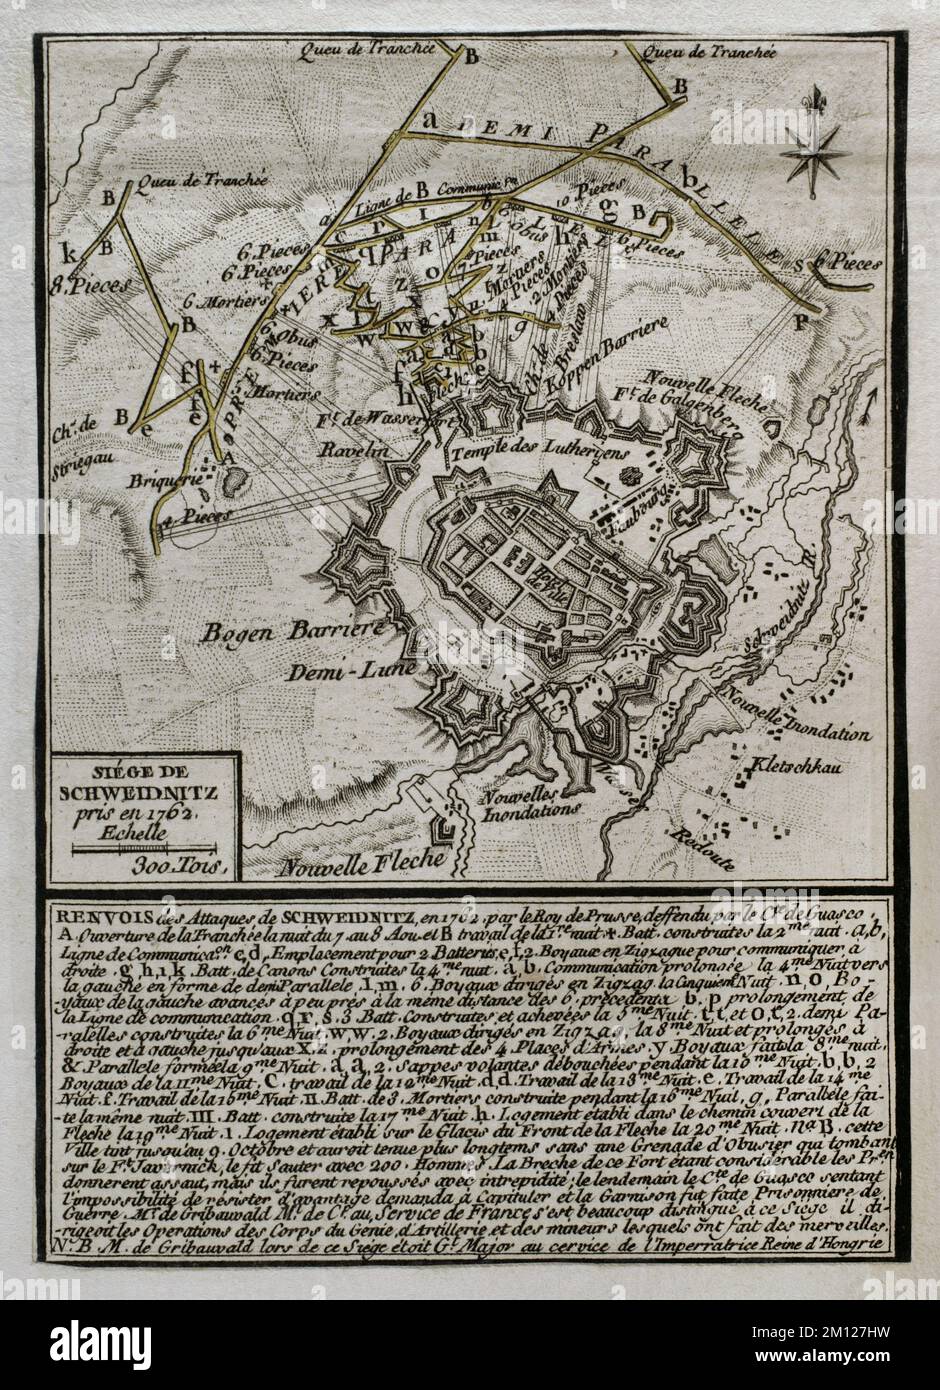 7 Jahre Krieg (1756-1763). Dritter Schlesischer Krieg. Belagerung Schweidnitz (7. August bis 9. Oktober 1762). Die preußische Armee von Friedrich dem Großen belagerte die Stadt, deren Festung von der österreichischen Garnison unter General Franz Guasco verteidigt wurde. Am 8. Oktober explodierte eine preußische Mine unter der Stadt das Pulvermagazin. Am nächsten Tag kapitulierte sich die Stadt. Am nächsten Tag kapitulierte die Stadt. Veröffentlicht im Jahr 1765 vom Kartografen Jean de Beaurain (1696-1771) als Illustration seiner Großen Karte Deutschlands mit den Ereignissen, die während des Siebenjährigen Krieges stattfanden. Ätzen und Gravieren. Französisch e Stockfoto